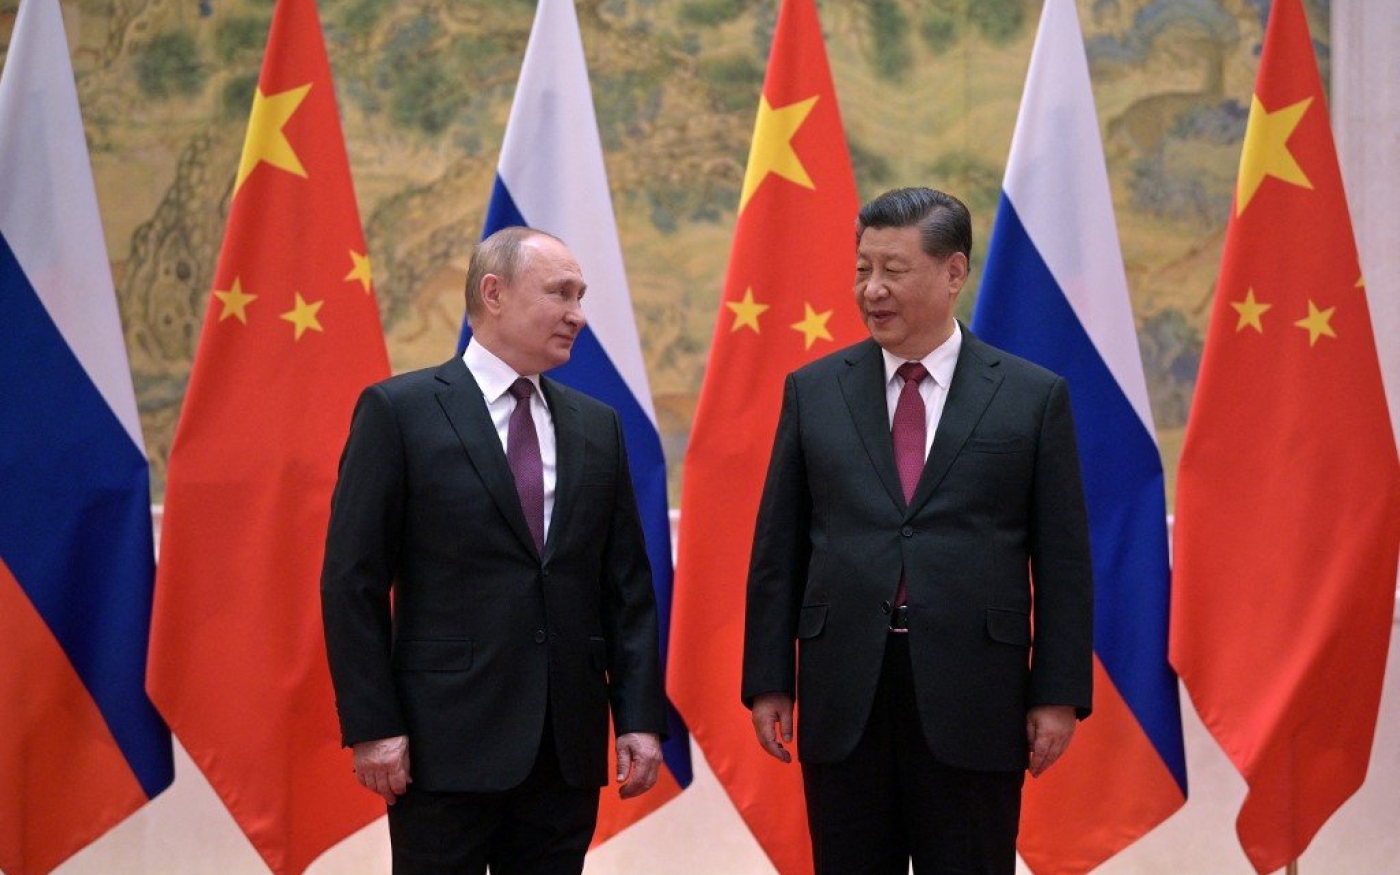 Le président russe Vladimir Poutine et le président chinois Xi Jinping se rencontrent à Beijing, le 4 février 2022 (AFP)